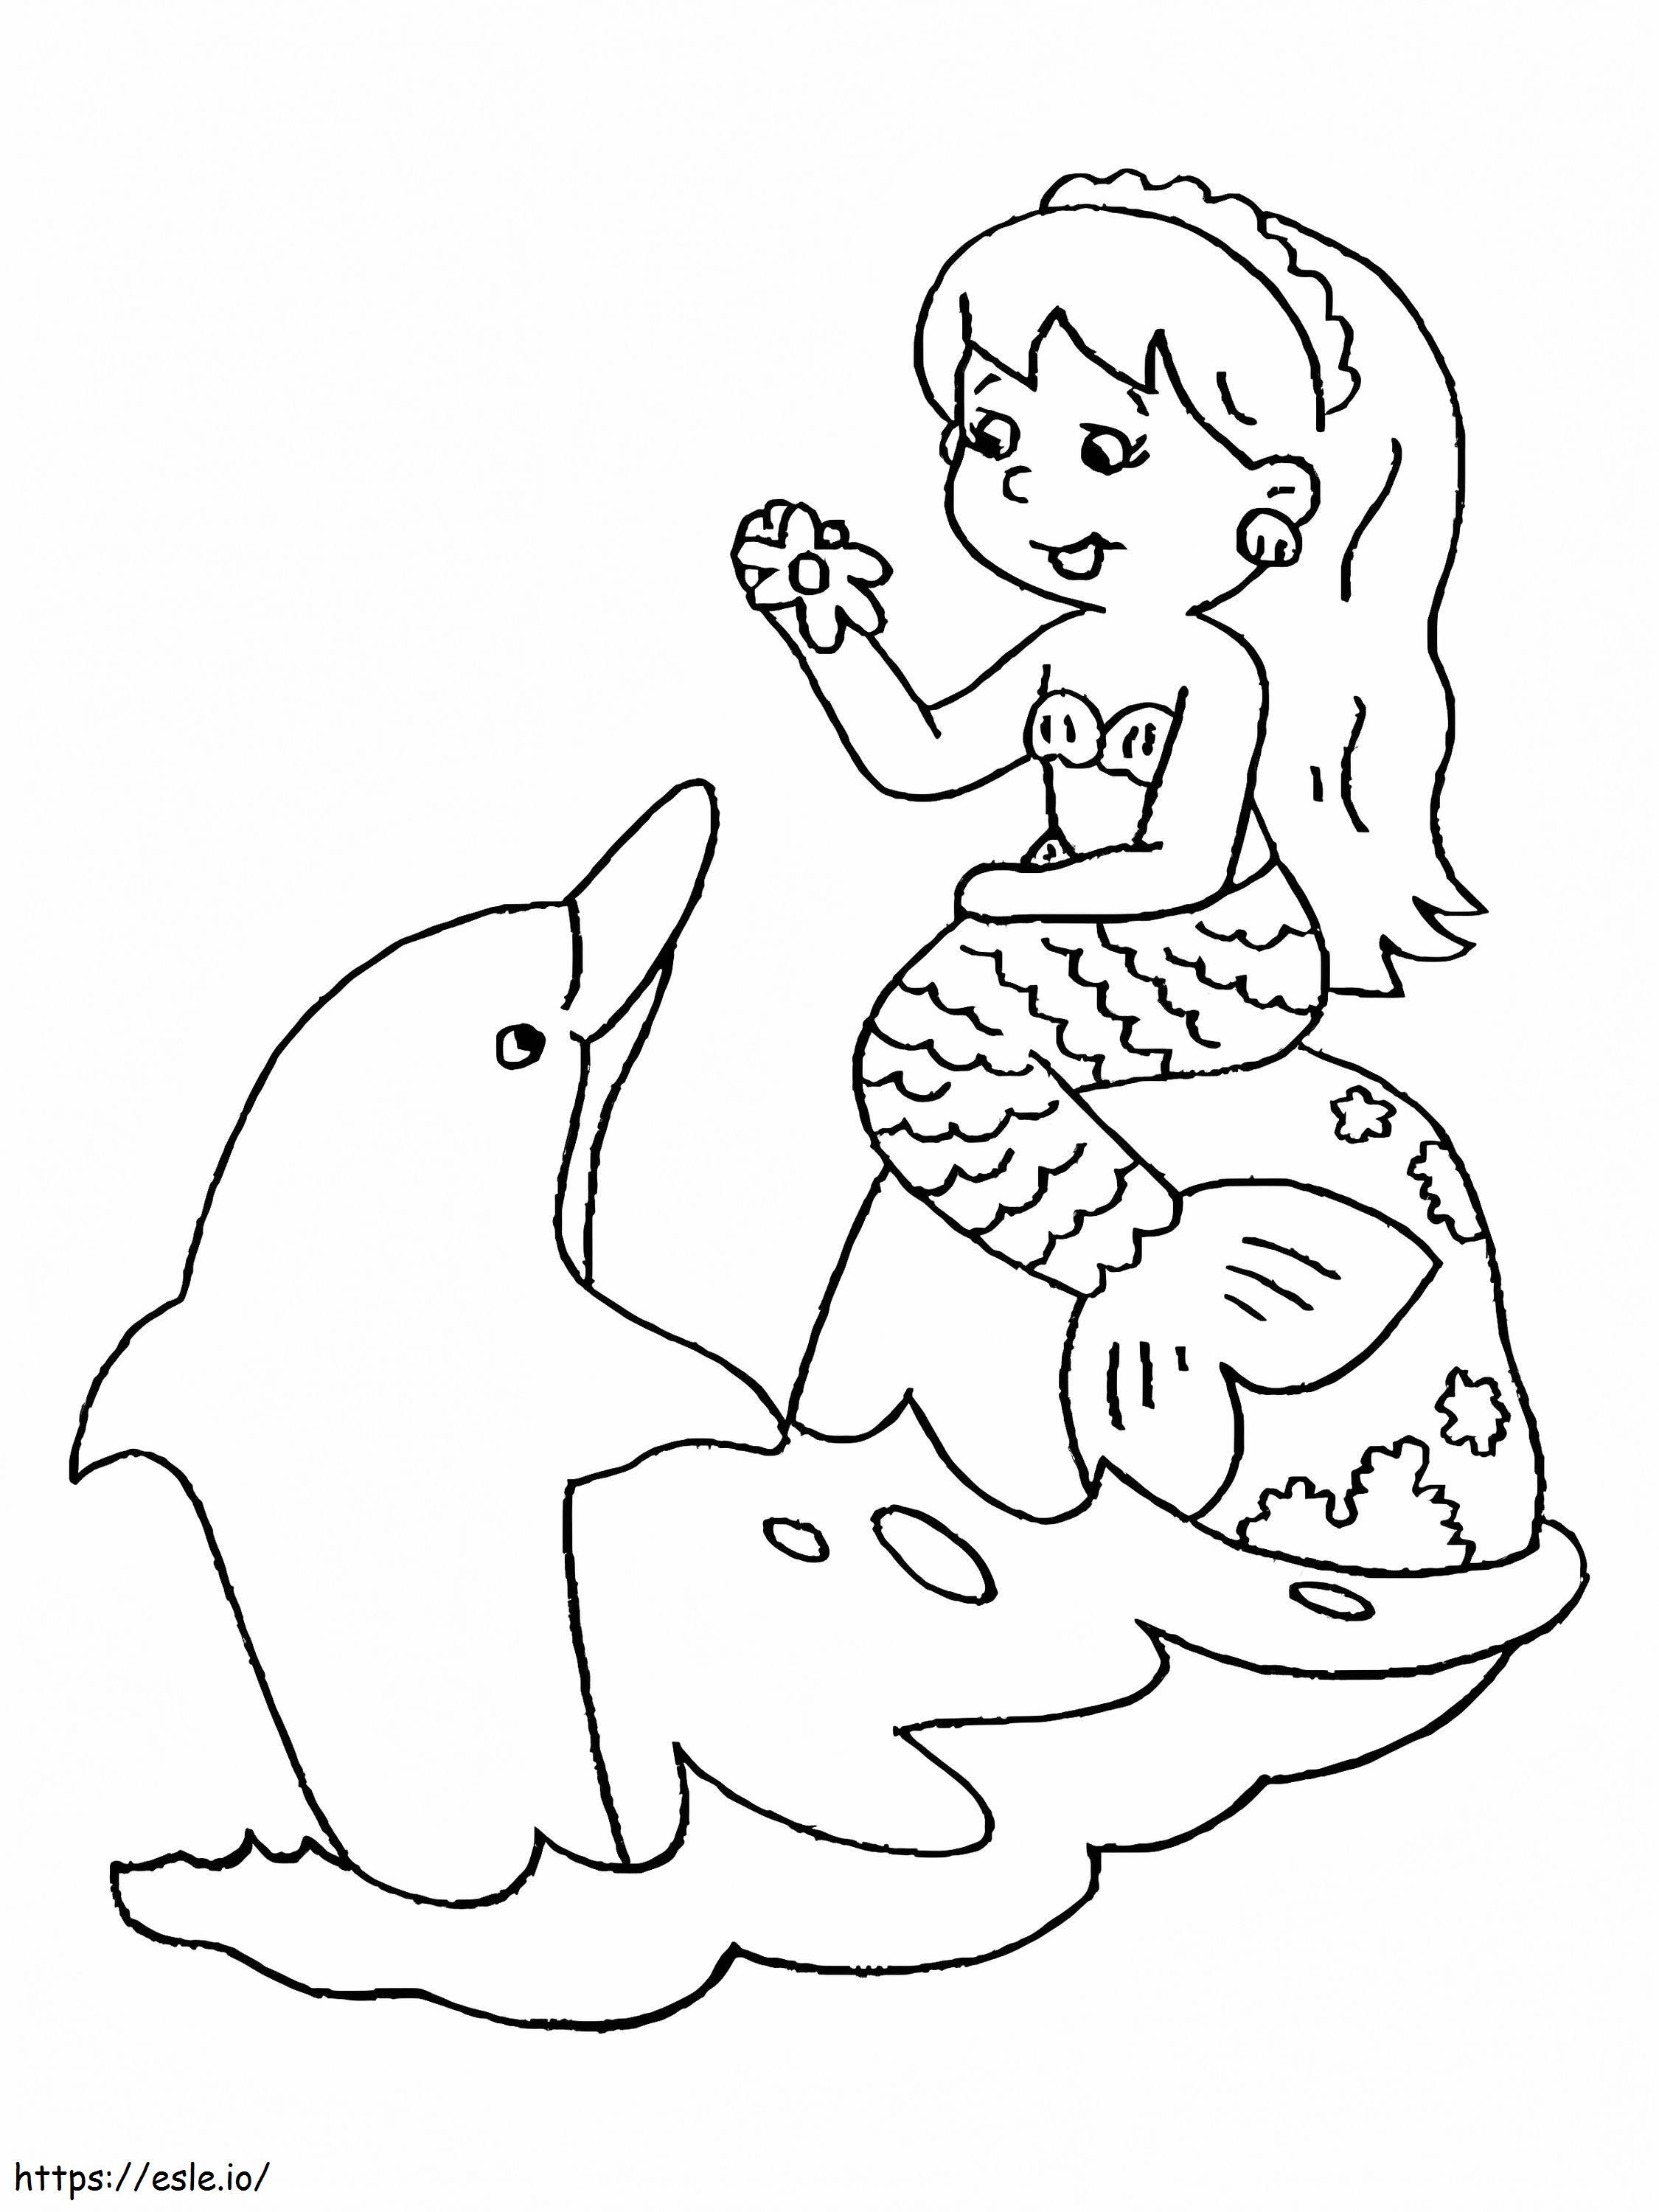 Meerjungfrau und Delphin ausmalbilder